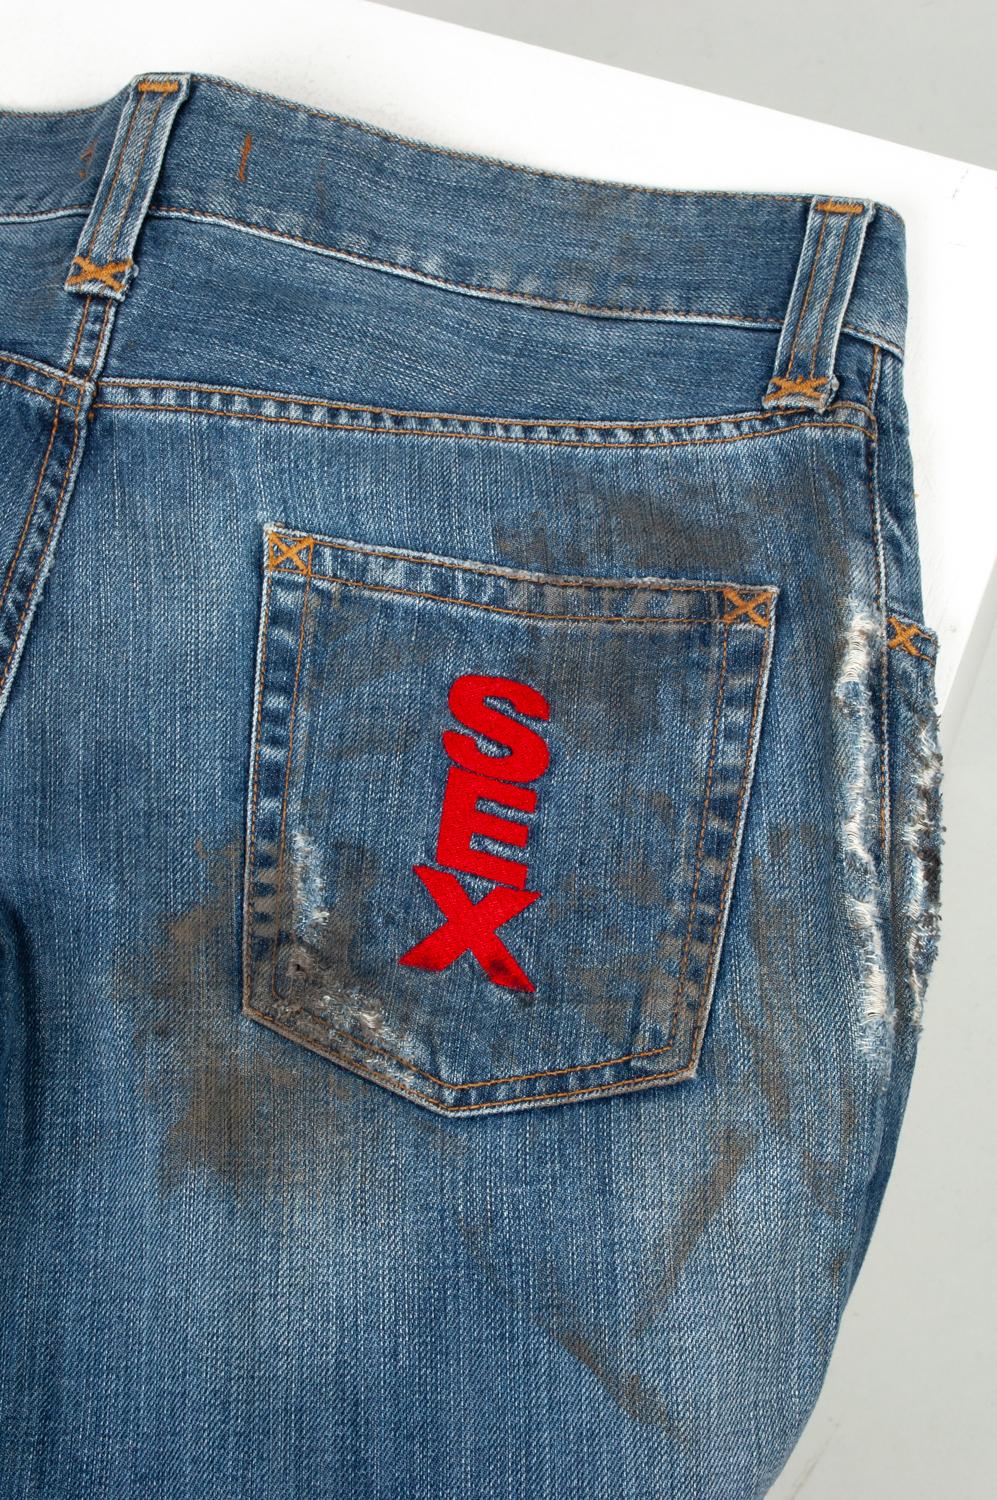 100% authentique Dolce Gabbana Distressed Sex Dirty Ripped Jeans
Couleur : bleu
(La couleur réelle peut varier légèrement en raison de l'interprétation individuelle de l'écran de l'ordinateur).
Matériau : 100% coton
Taille de l'étiquette : ITA 50
Ce